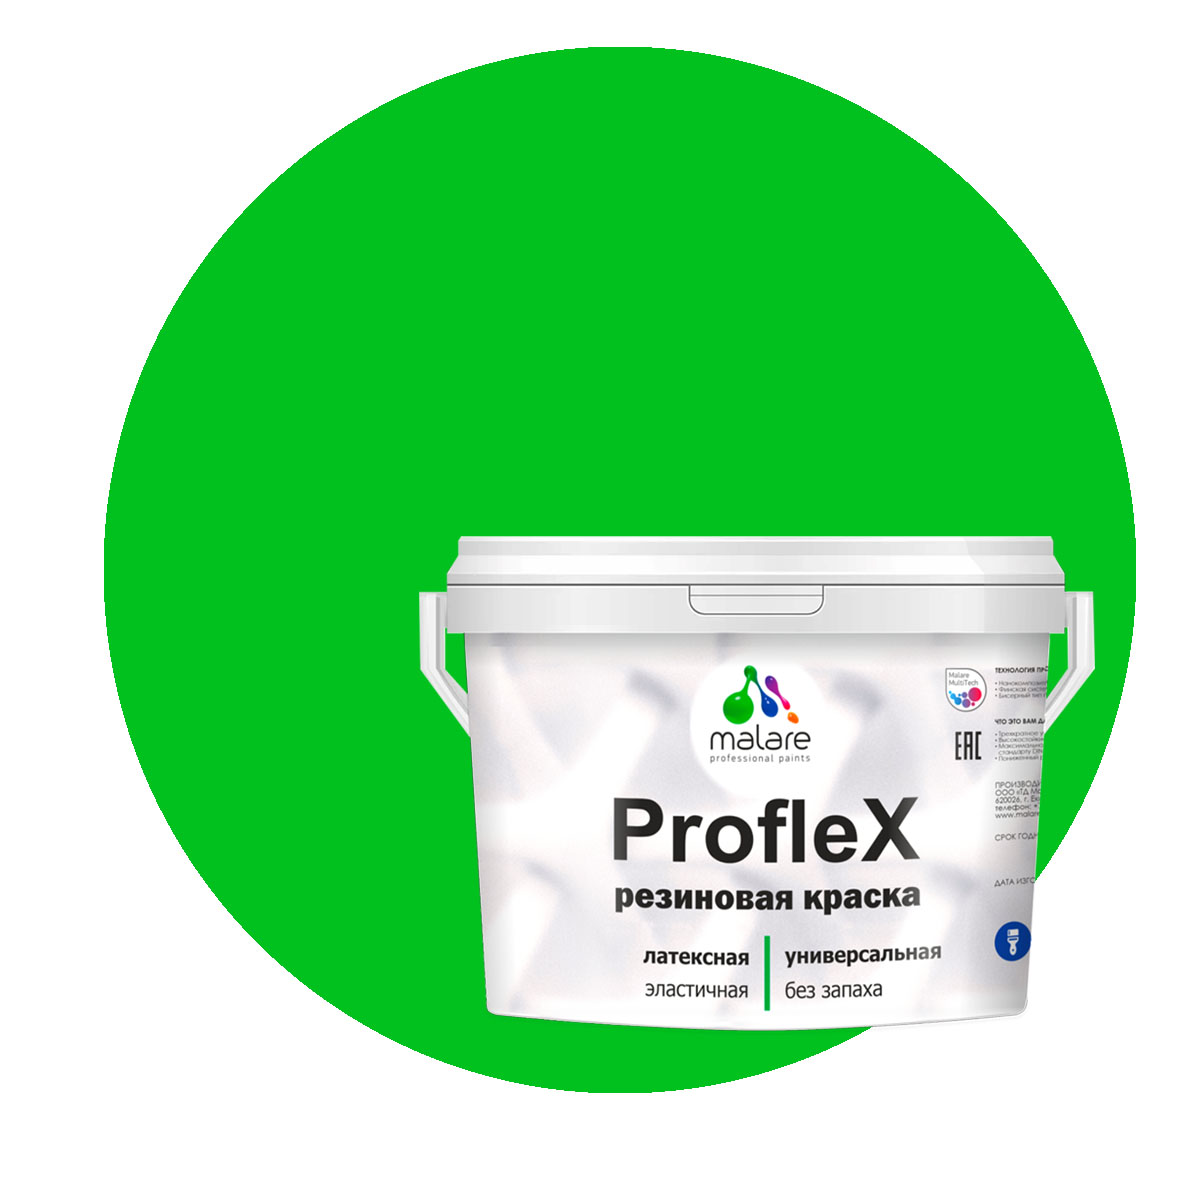 Краска Malare ProfleX для фасадов, интерьера, мебели, освежающий зеленый, 10 кг. щелочной очиститель фасадов зданий plex